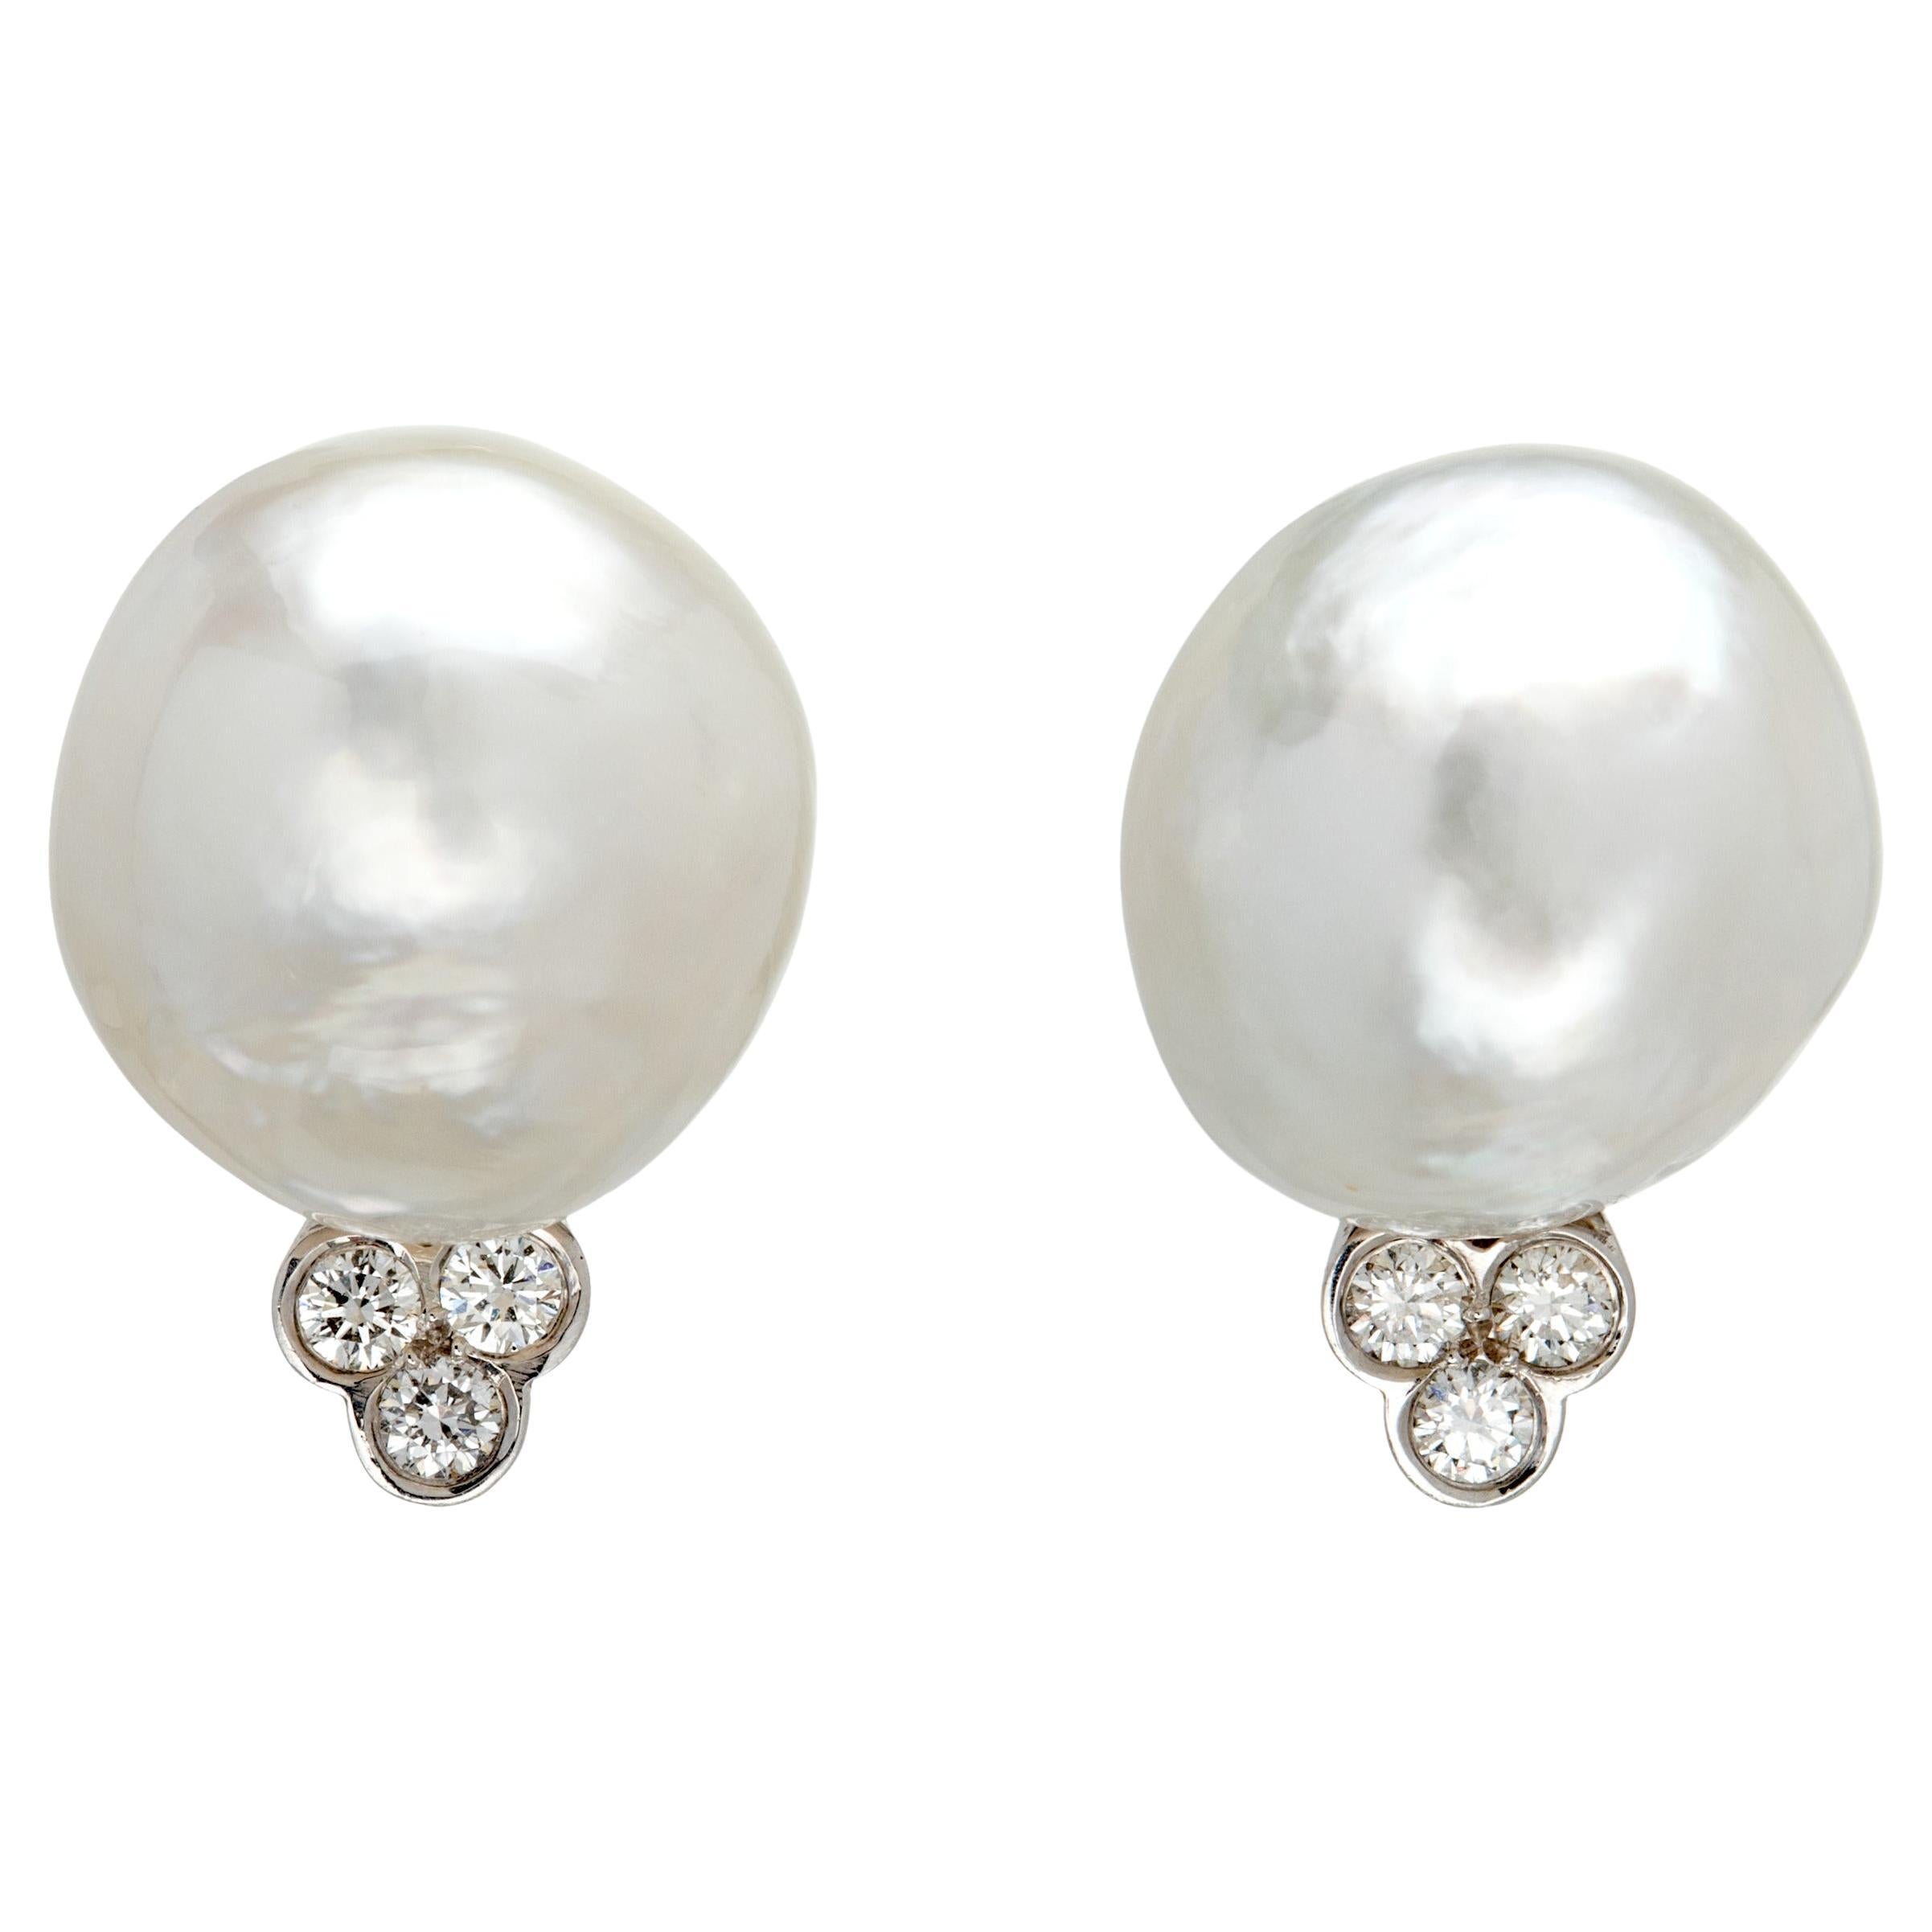 Boucles d'oreilles Trinity en or blanc 18 carats avec perles baroques des mers du Sud et diamants